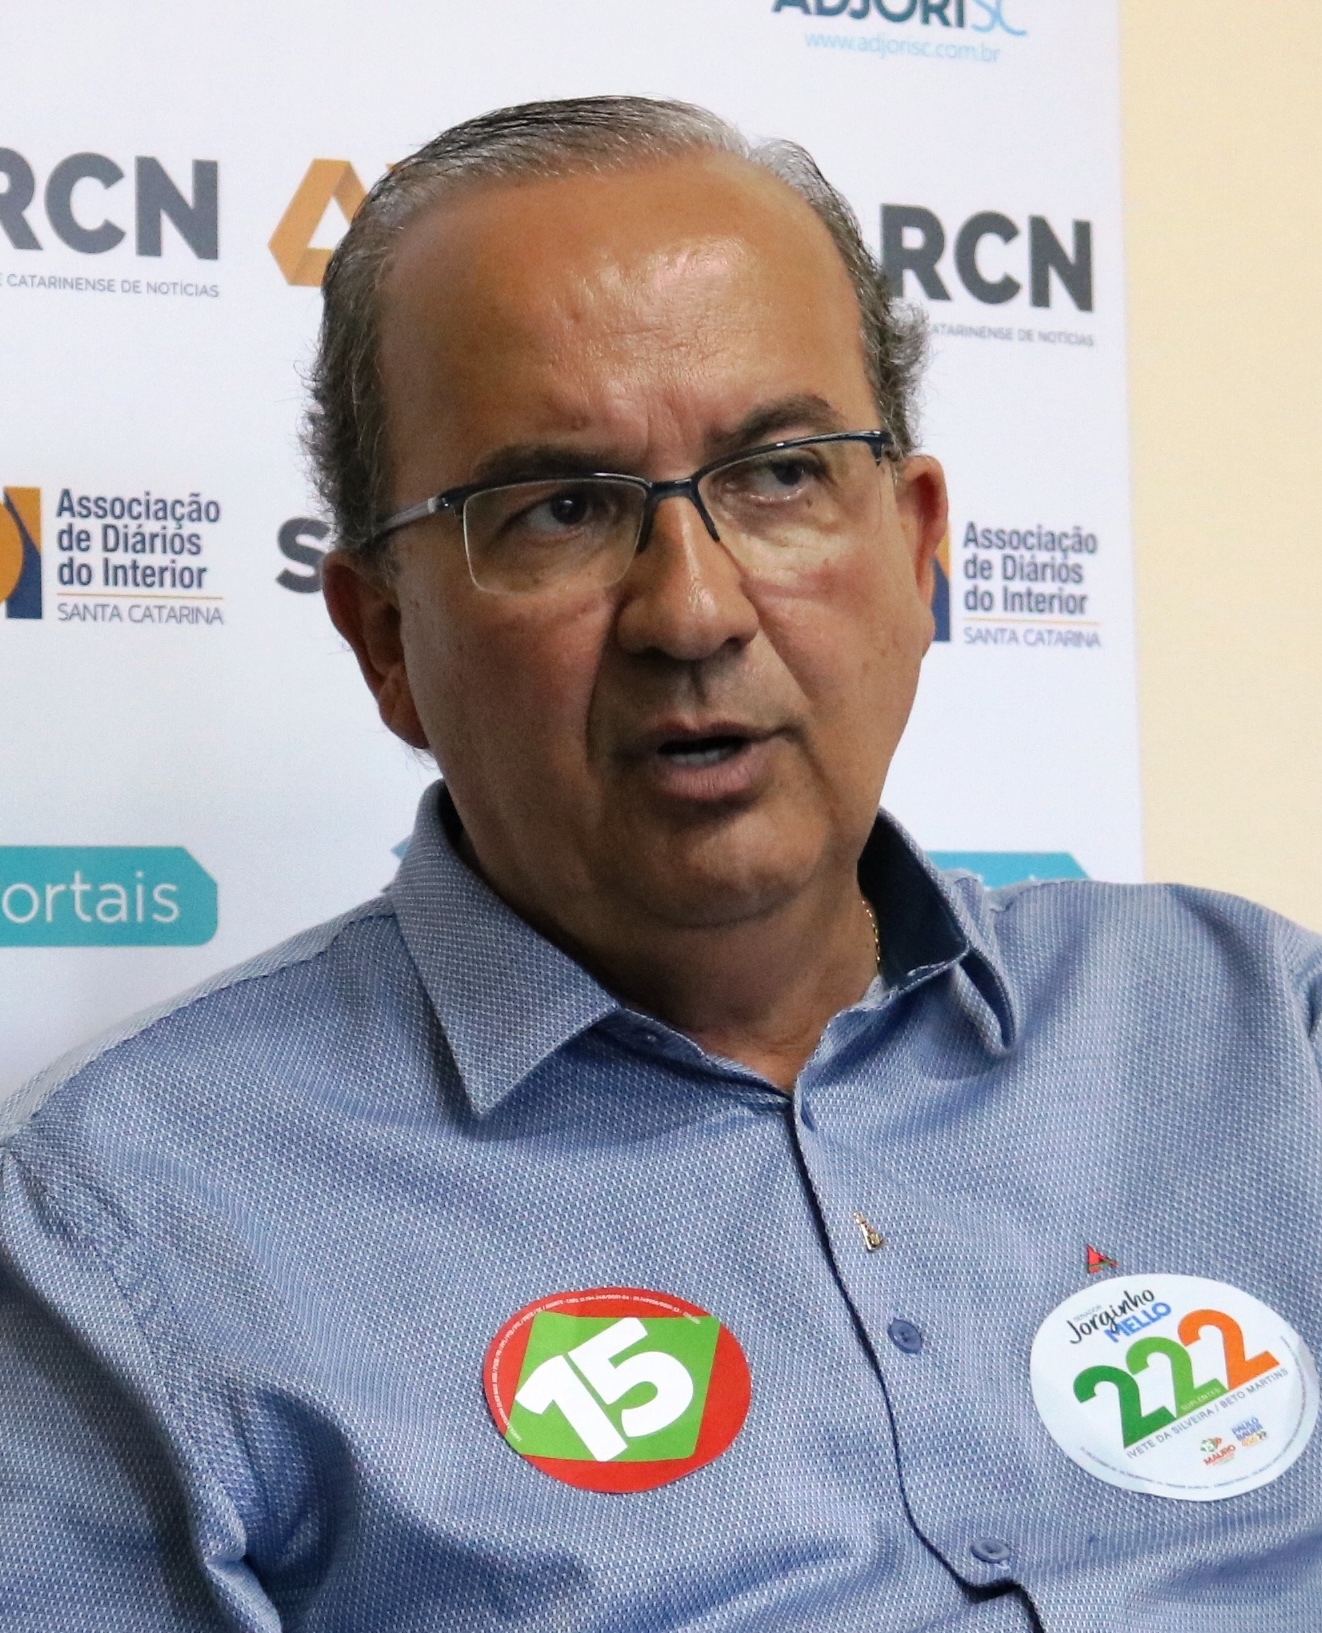 Entrevista Jorginho Melo/PR - “Mutirão nacional”